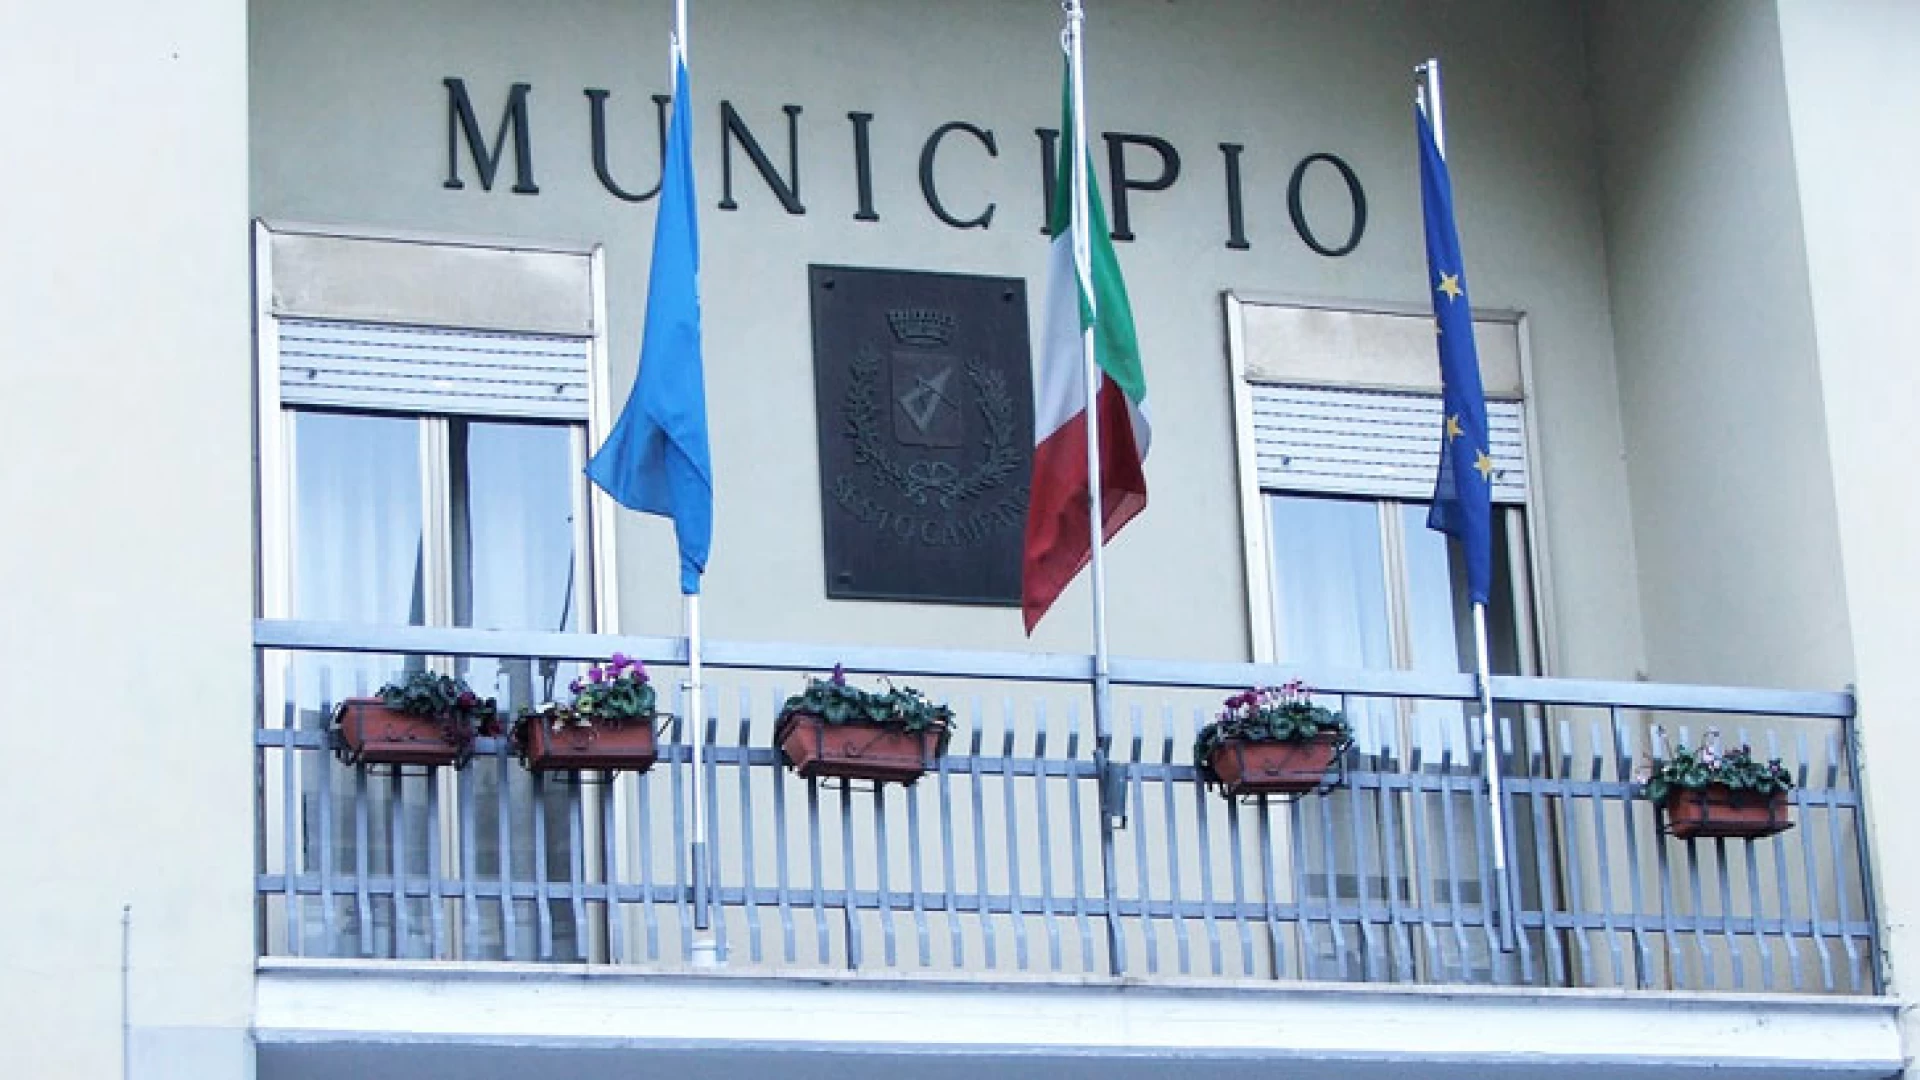 Sesto Campano: Paolone è salvo ma dovrà riapprovare il bilancio 2016.